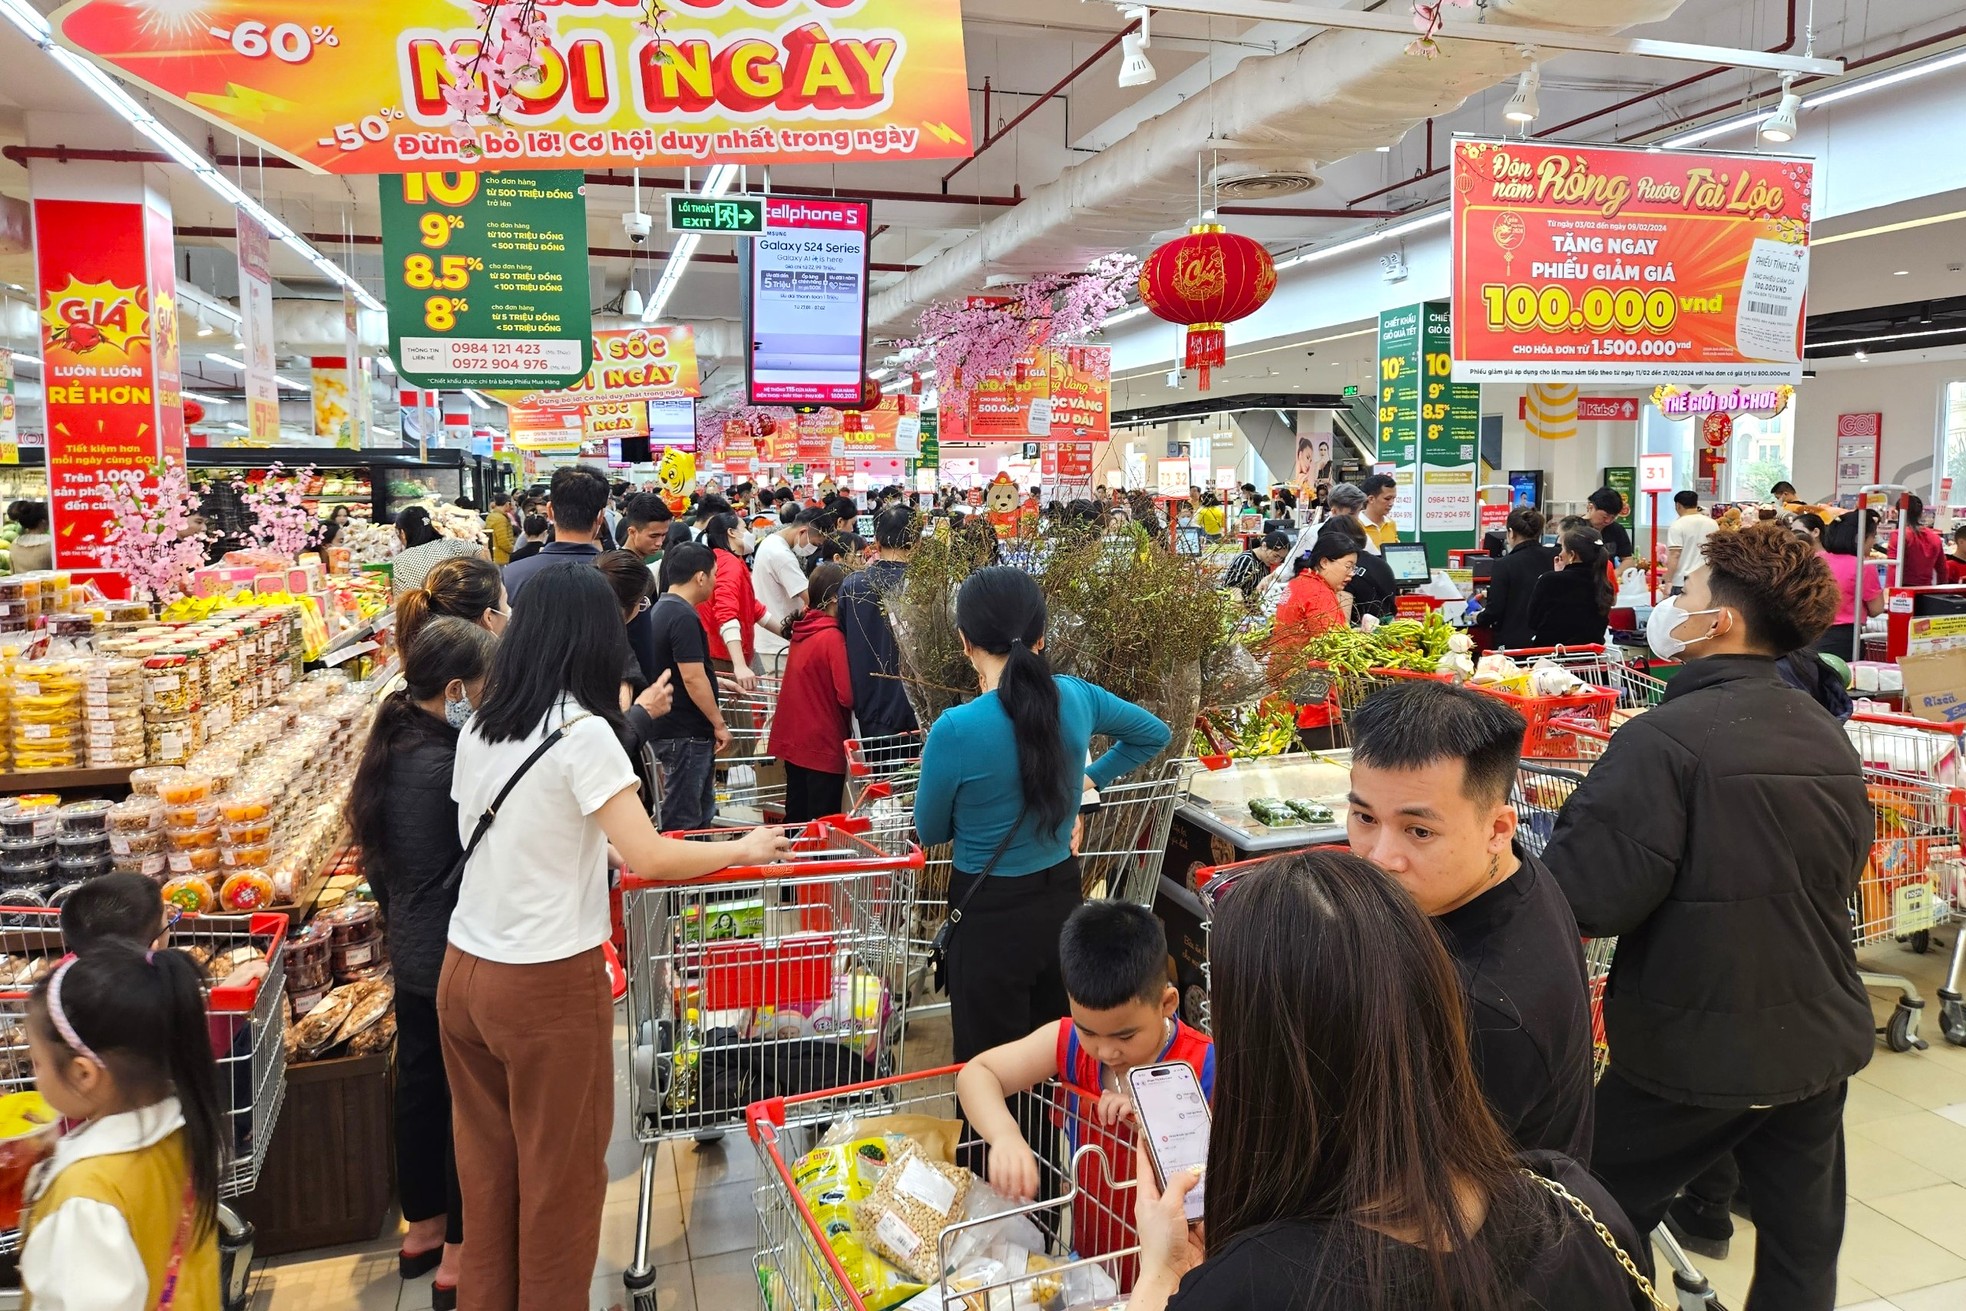 Cảnh trái ngược giữa siêu thị và chợ truyền thống ngày giáp Tết - Ảnh 8.